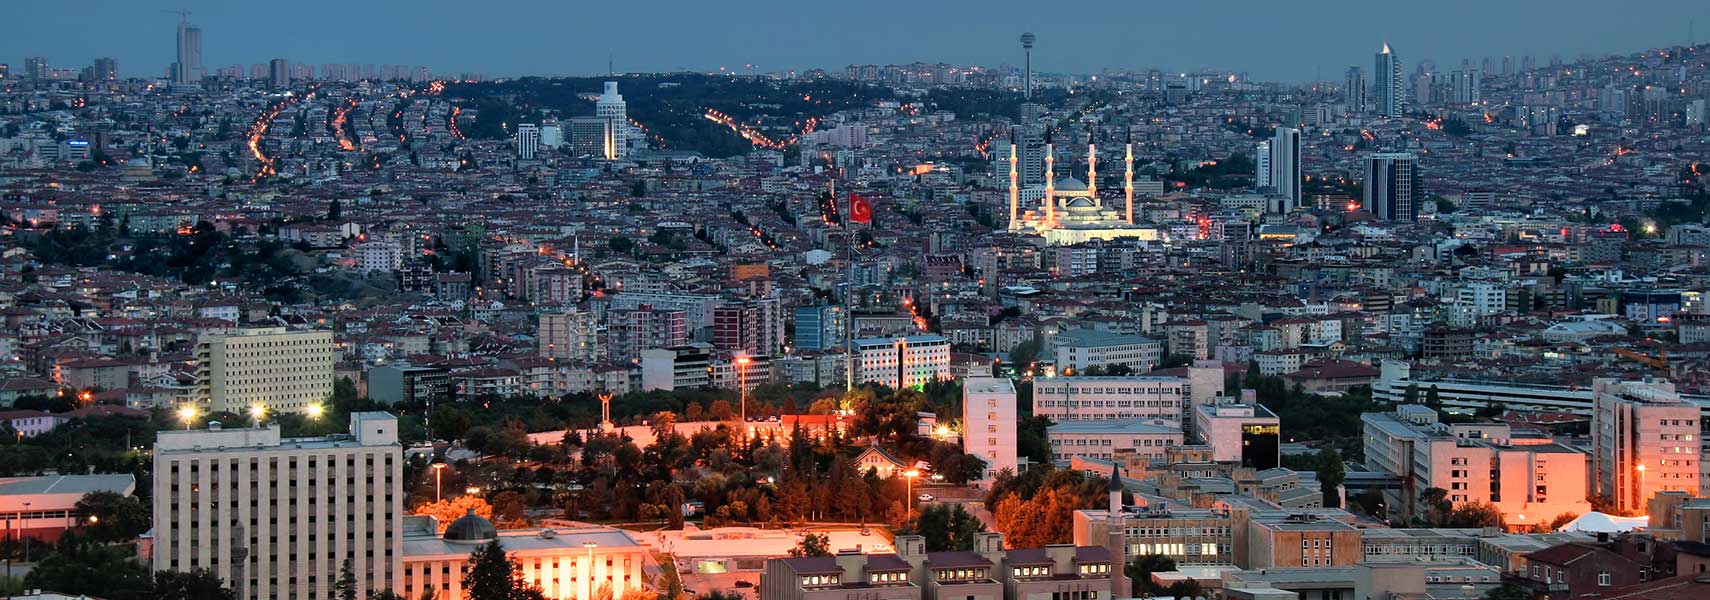 Ankara at night